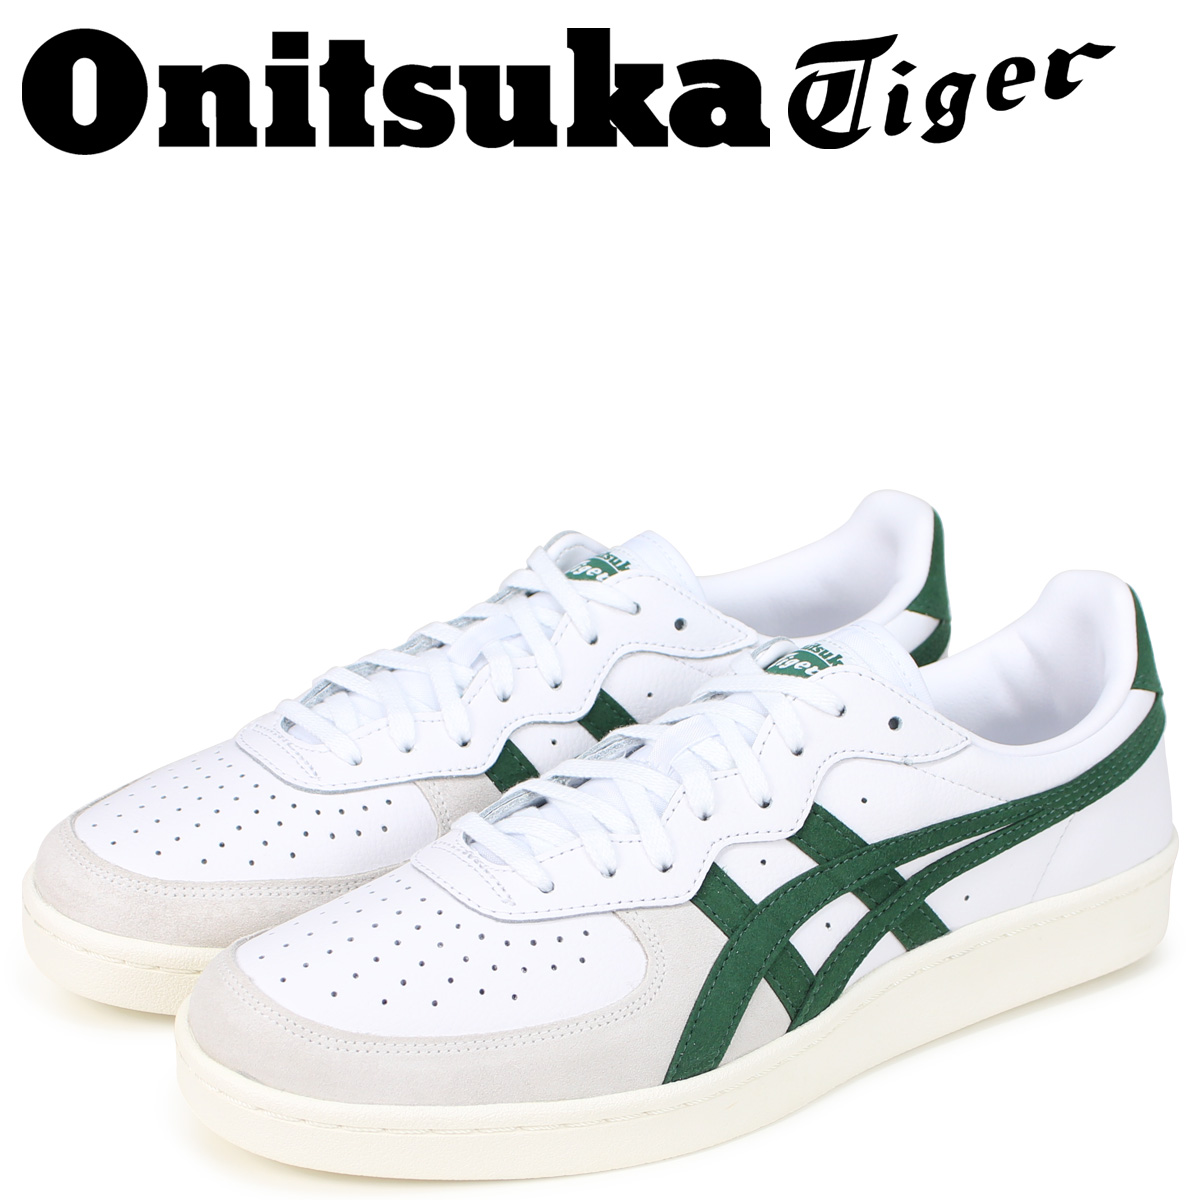 onitsuka tiger gsm white green